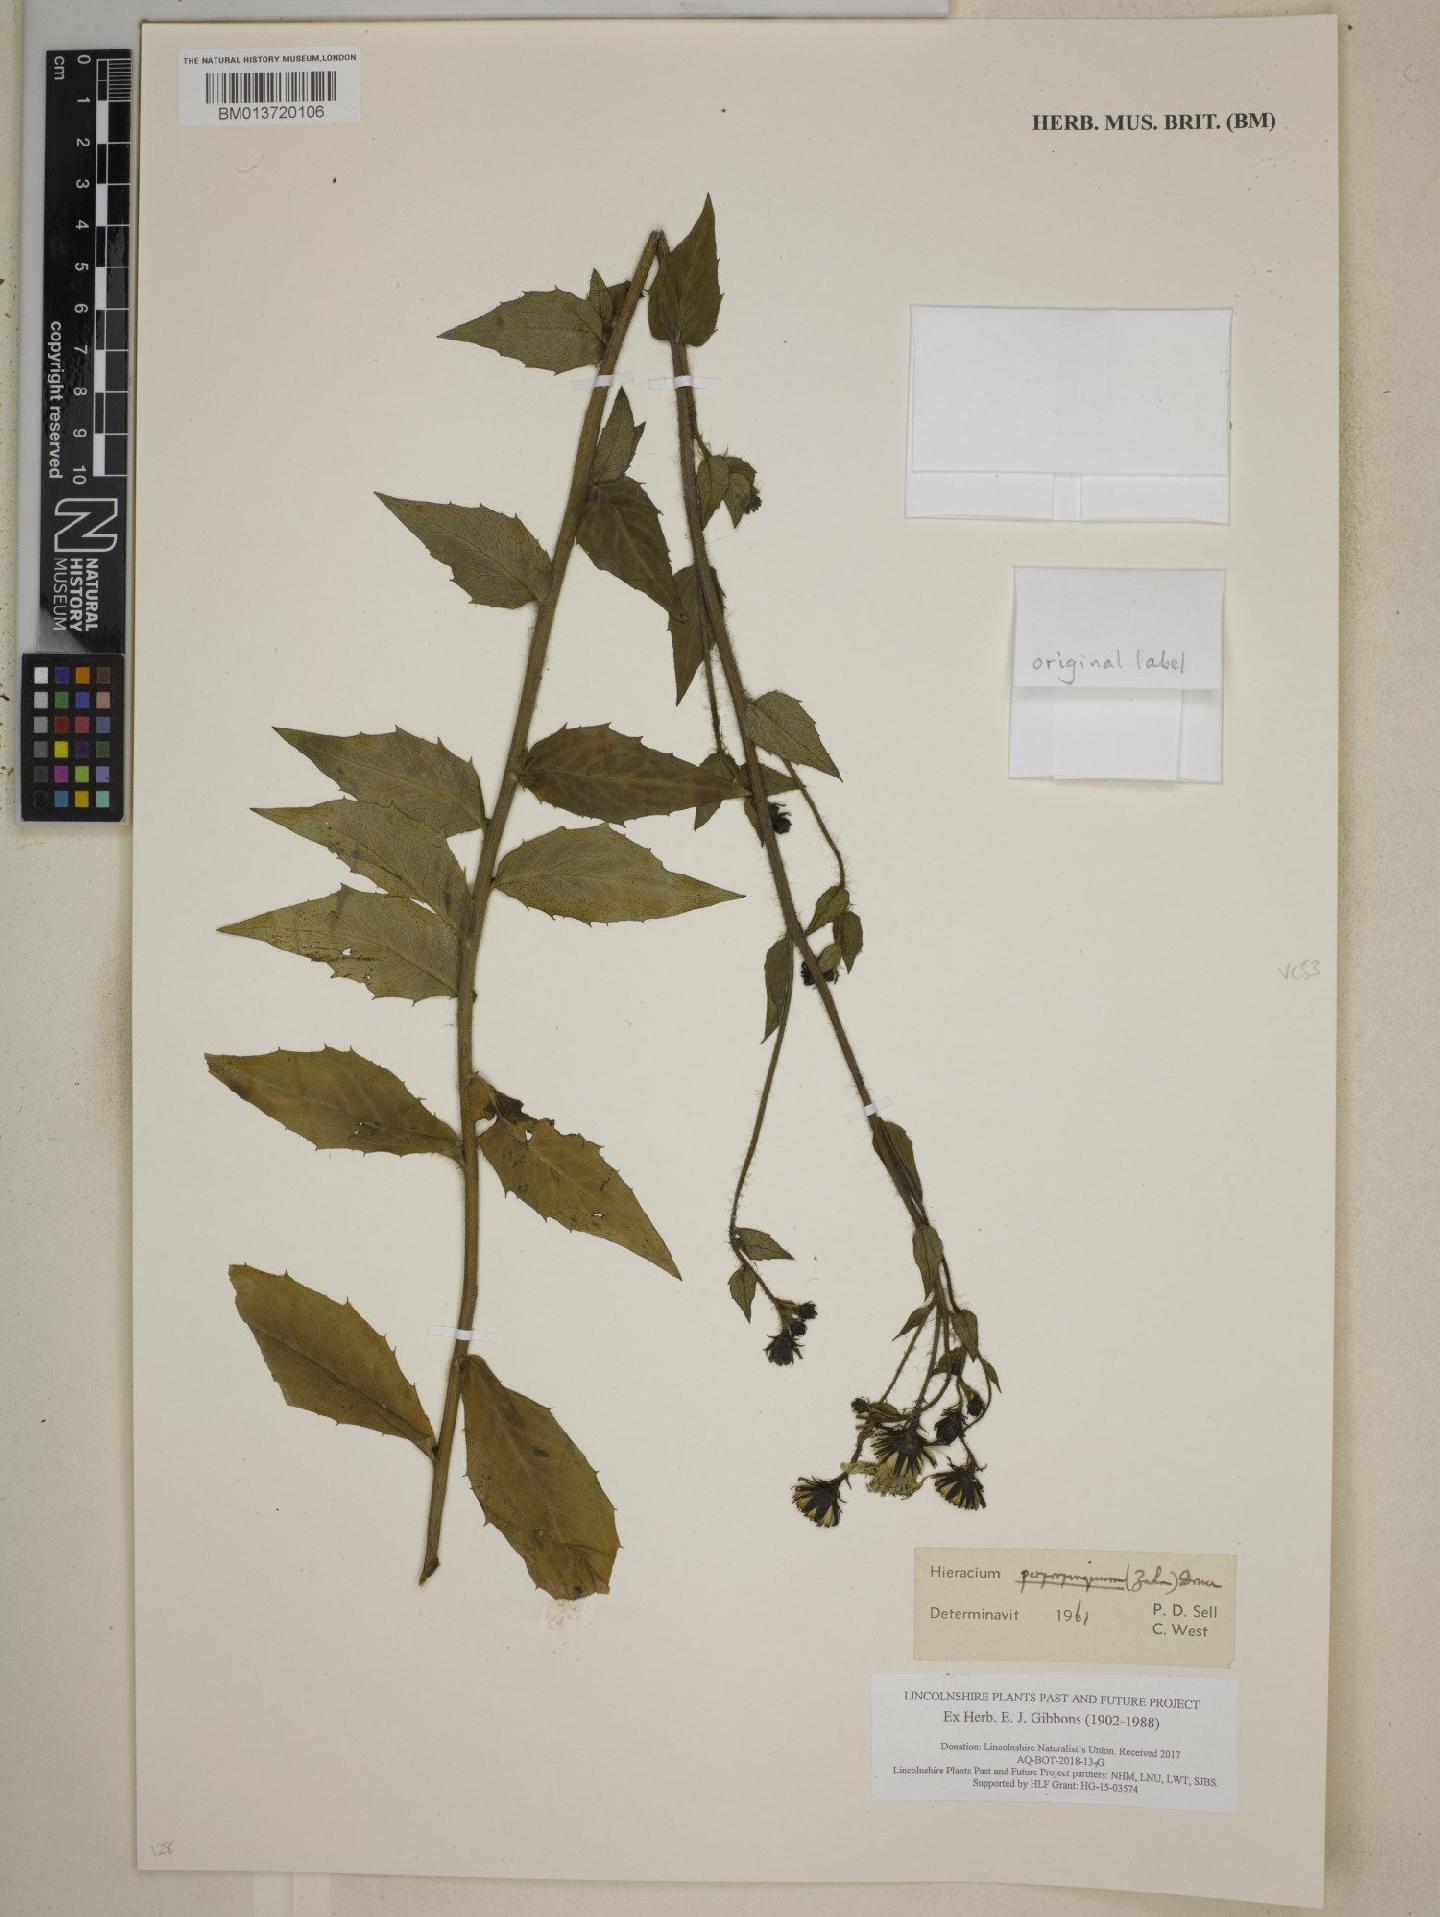 To NHMUK collection (Hieracium sabaudum subsp. sabaudum (L.) Zahn; NHMUK:ecatalogue:9003986)